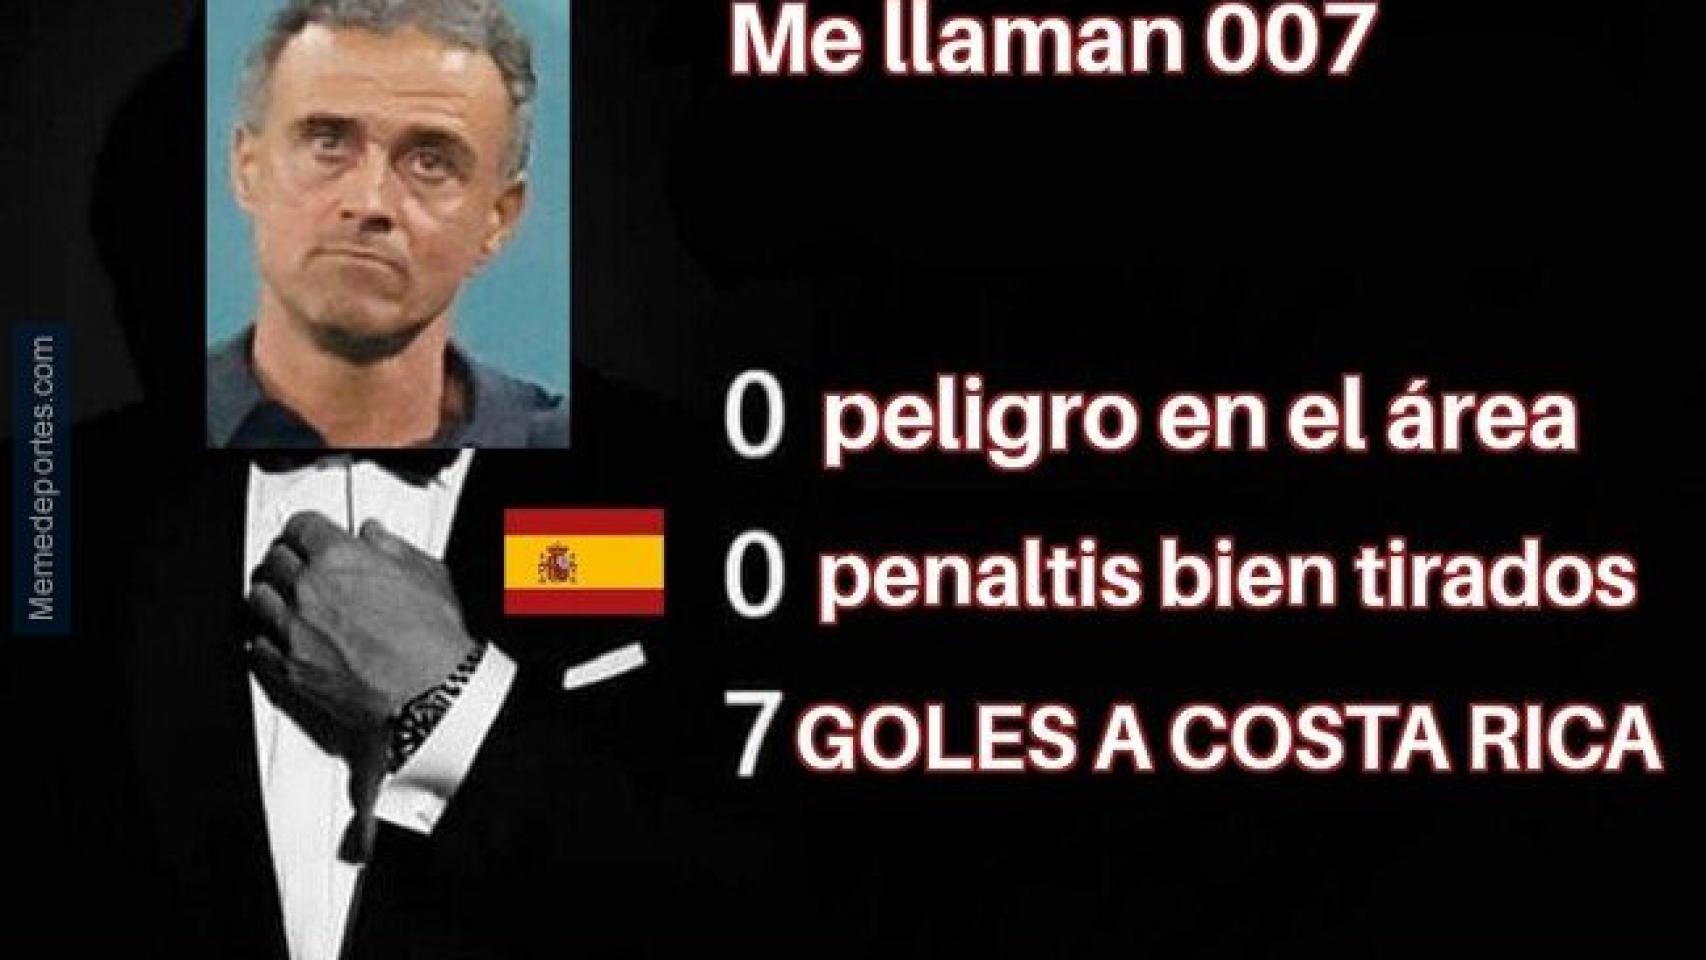 Marruecos 0 0 Espana Los Memes De La Eliminacion De Espana Ante Marruecos En El Mundial De Qatar Luis Enrique Unai Simon O El Barca Los Grandes Protagonistas